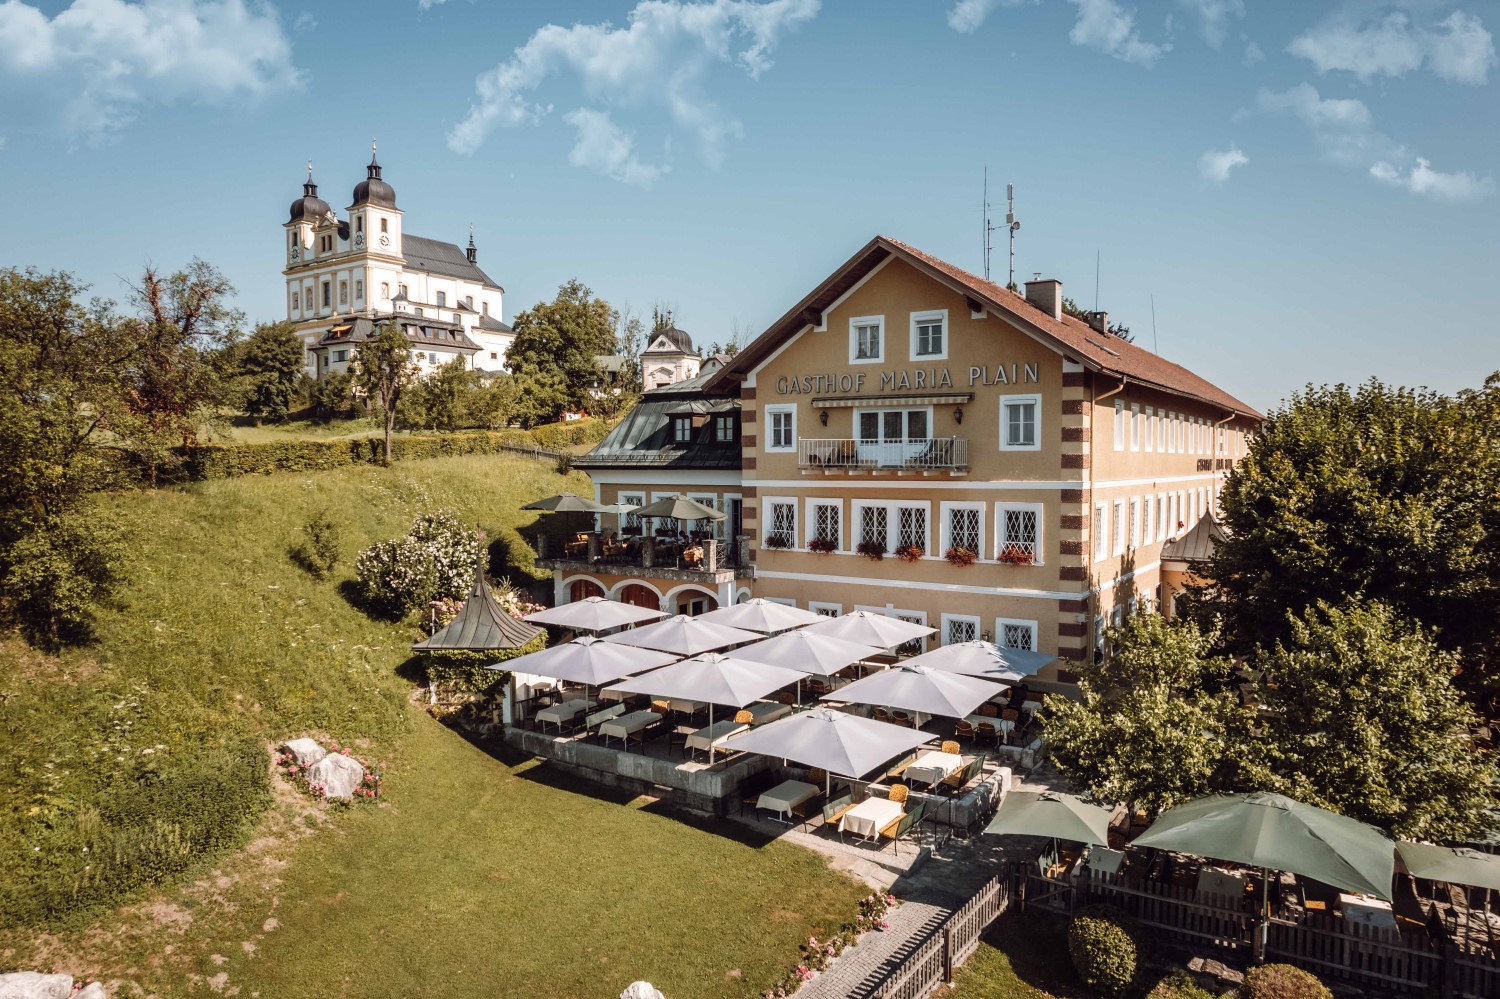 Hotel Gasthof Maria Plain in Bergheim bei Salzburg